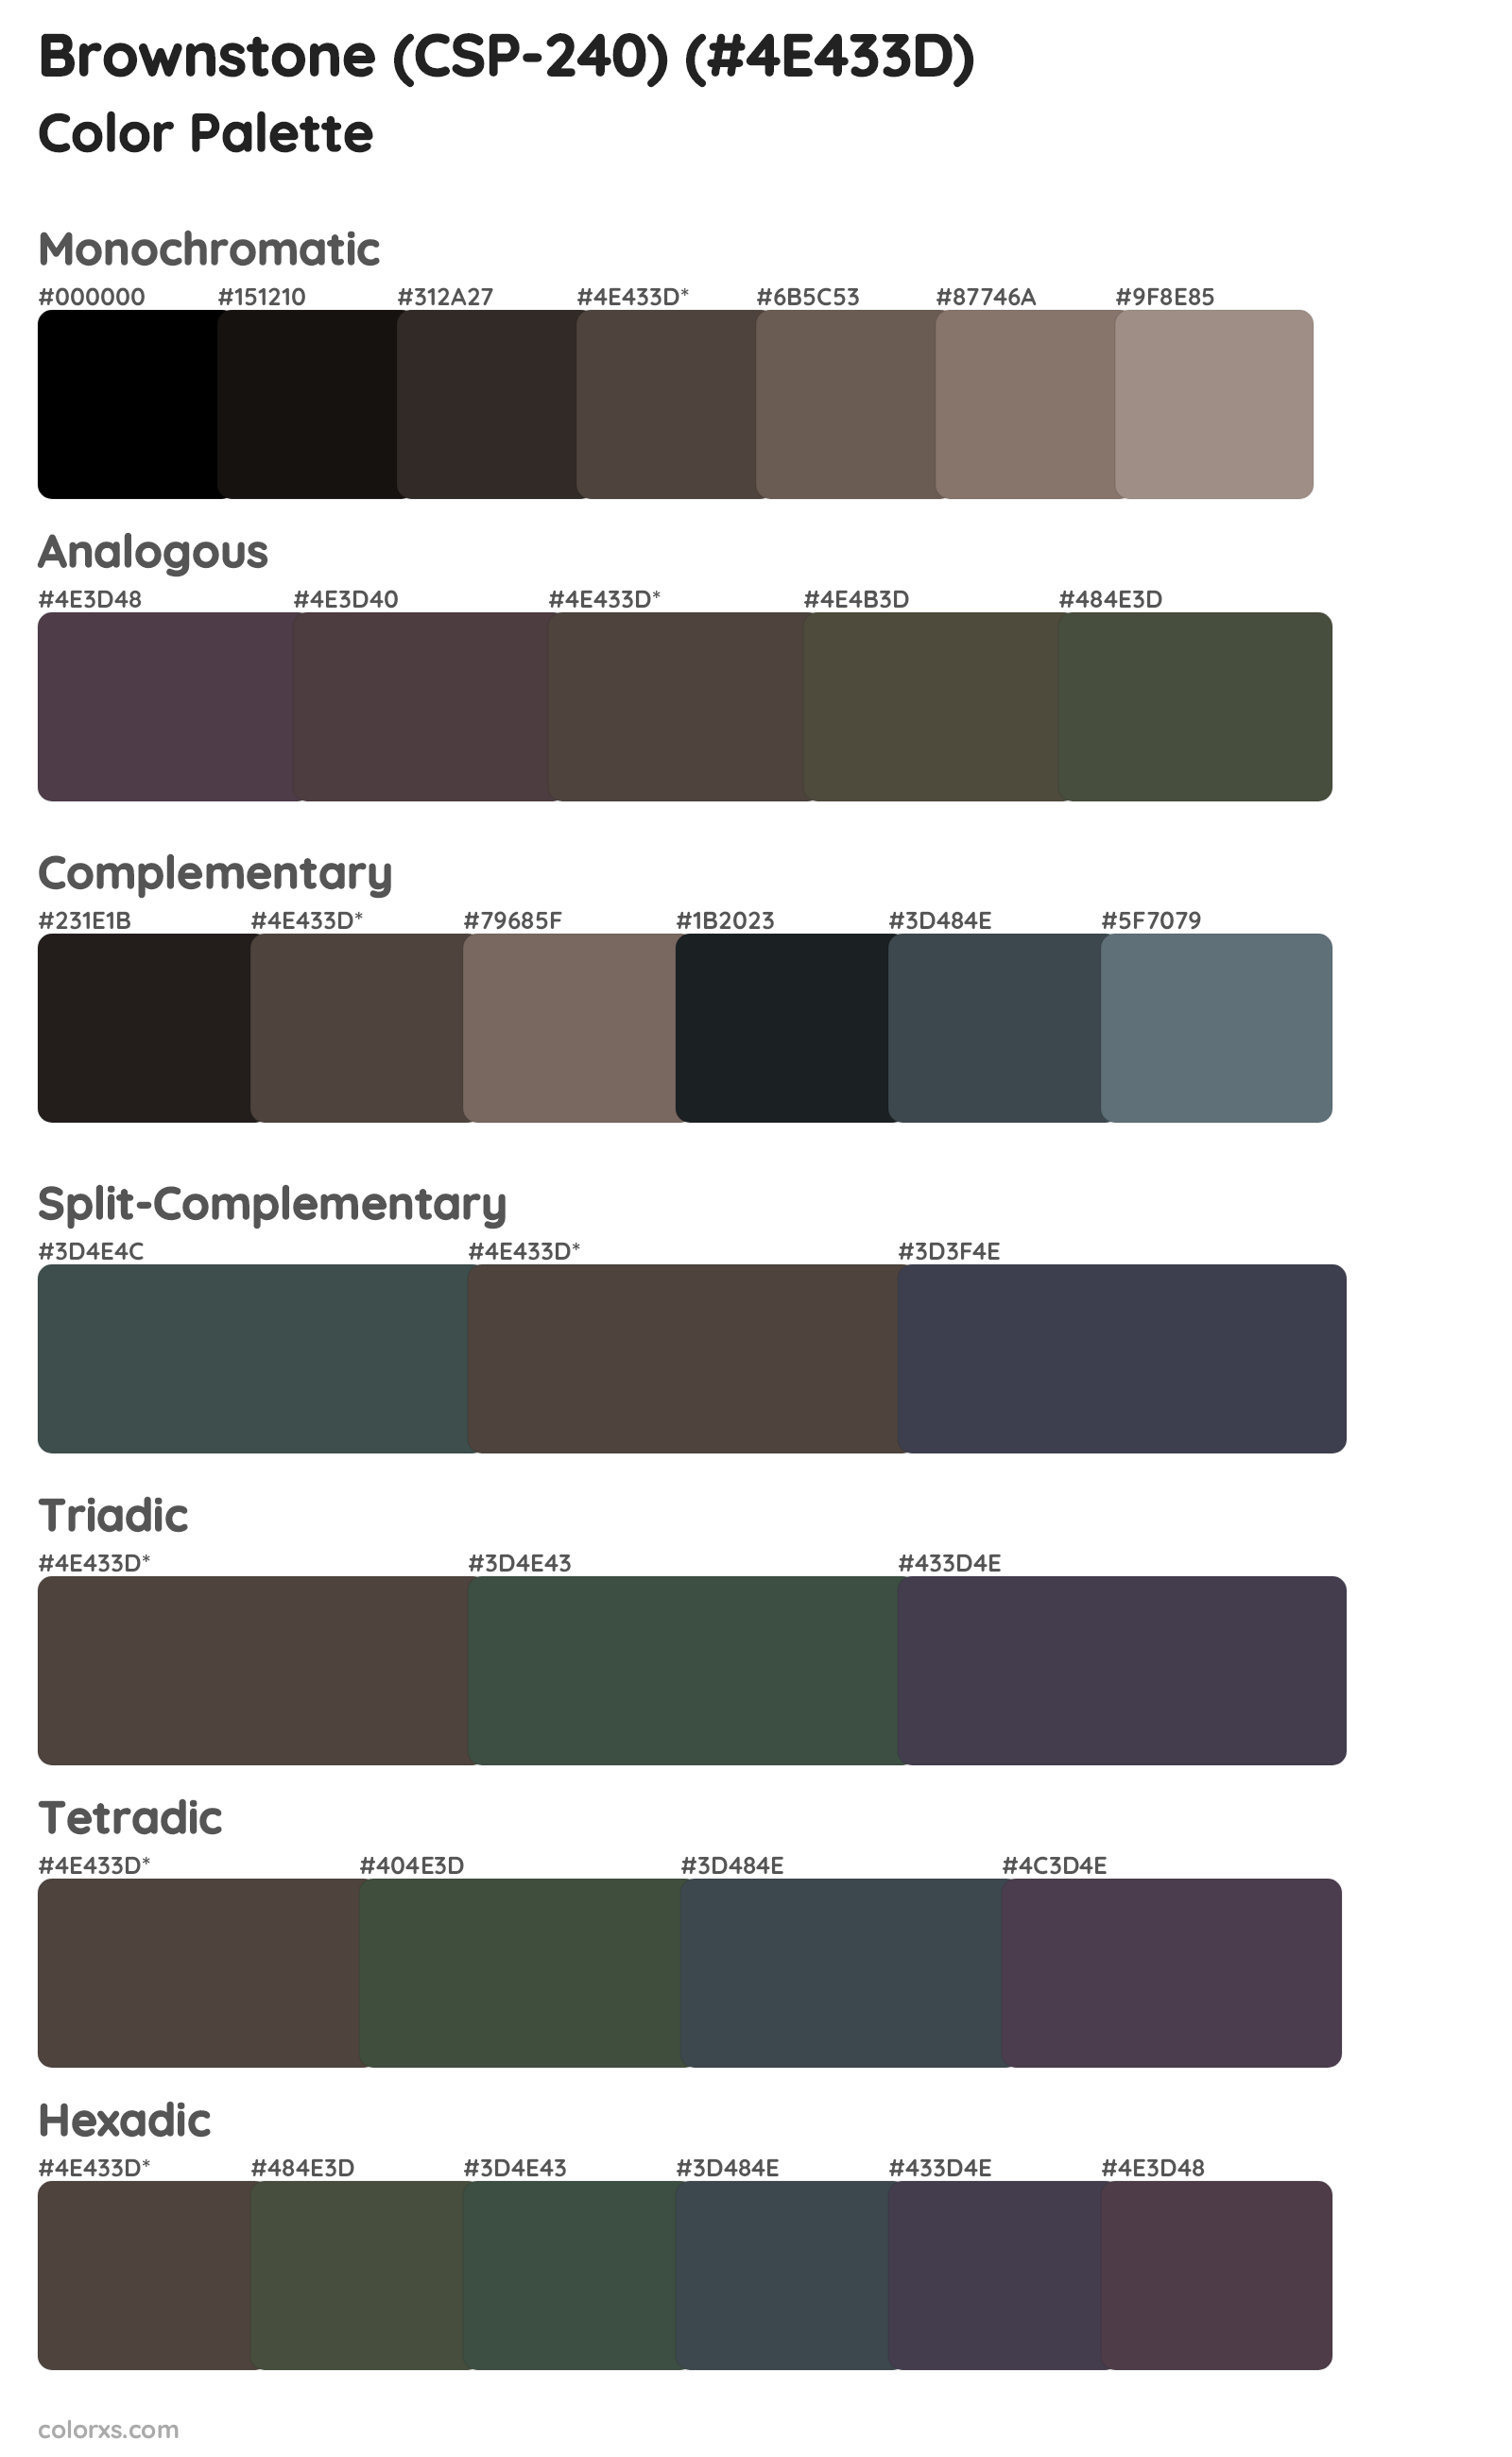 Brownstone (CSP-240) Color Scheme Palettes